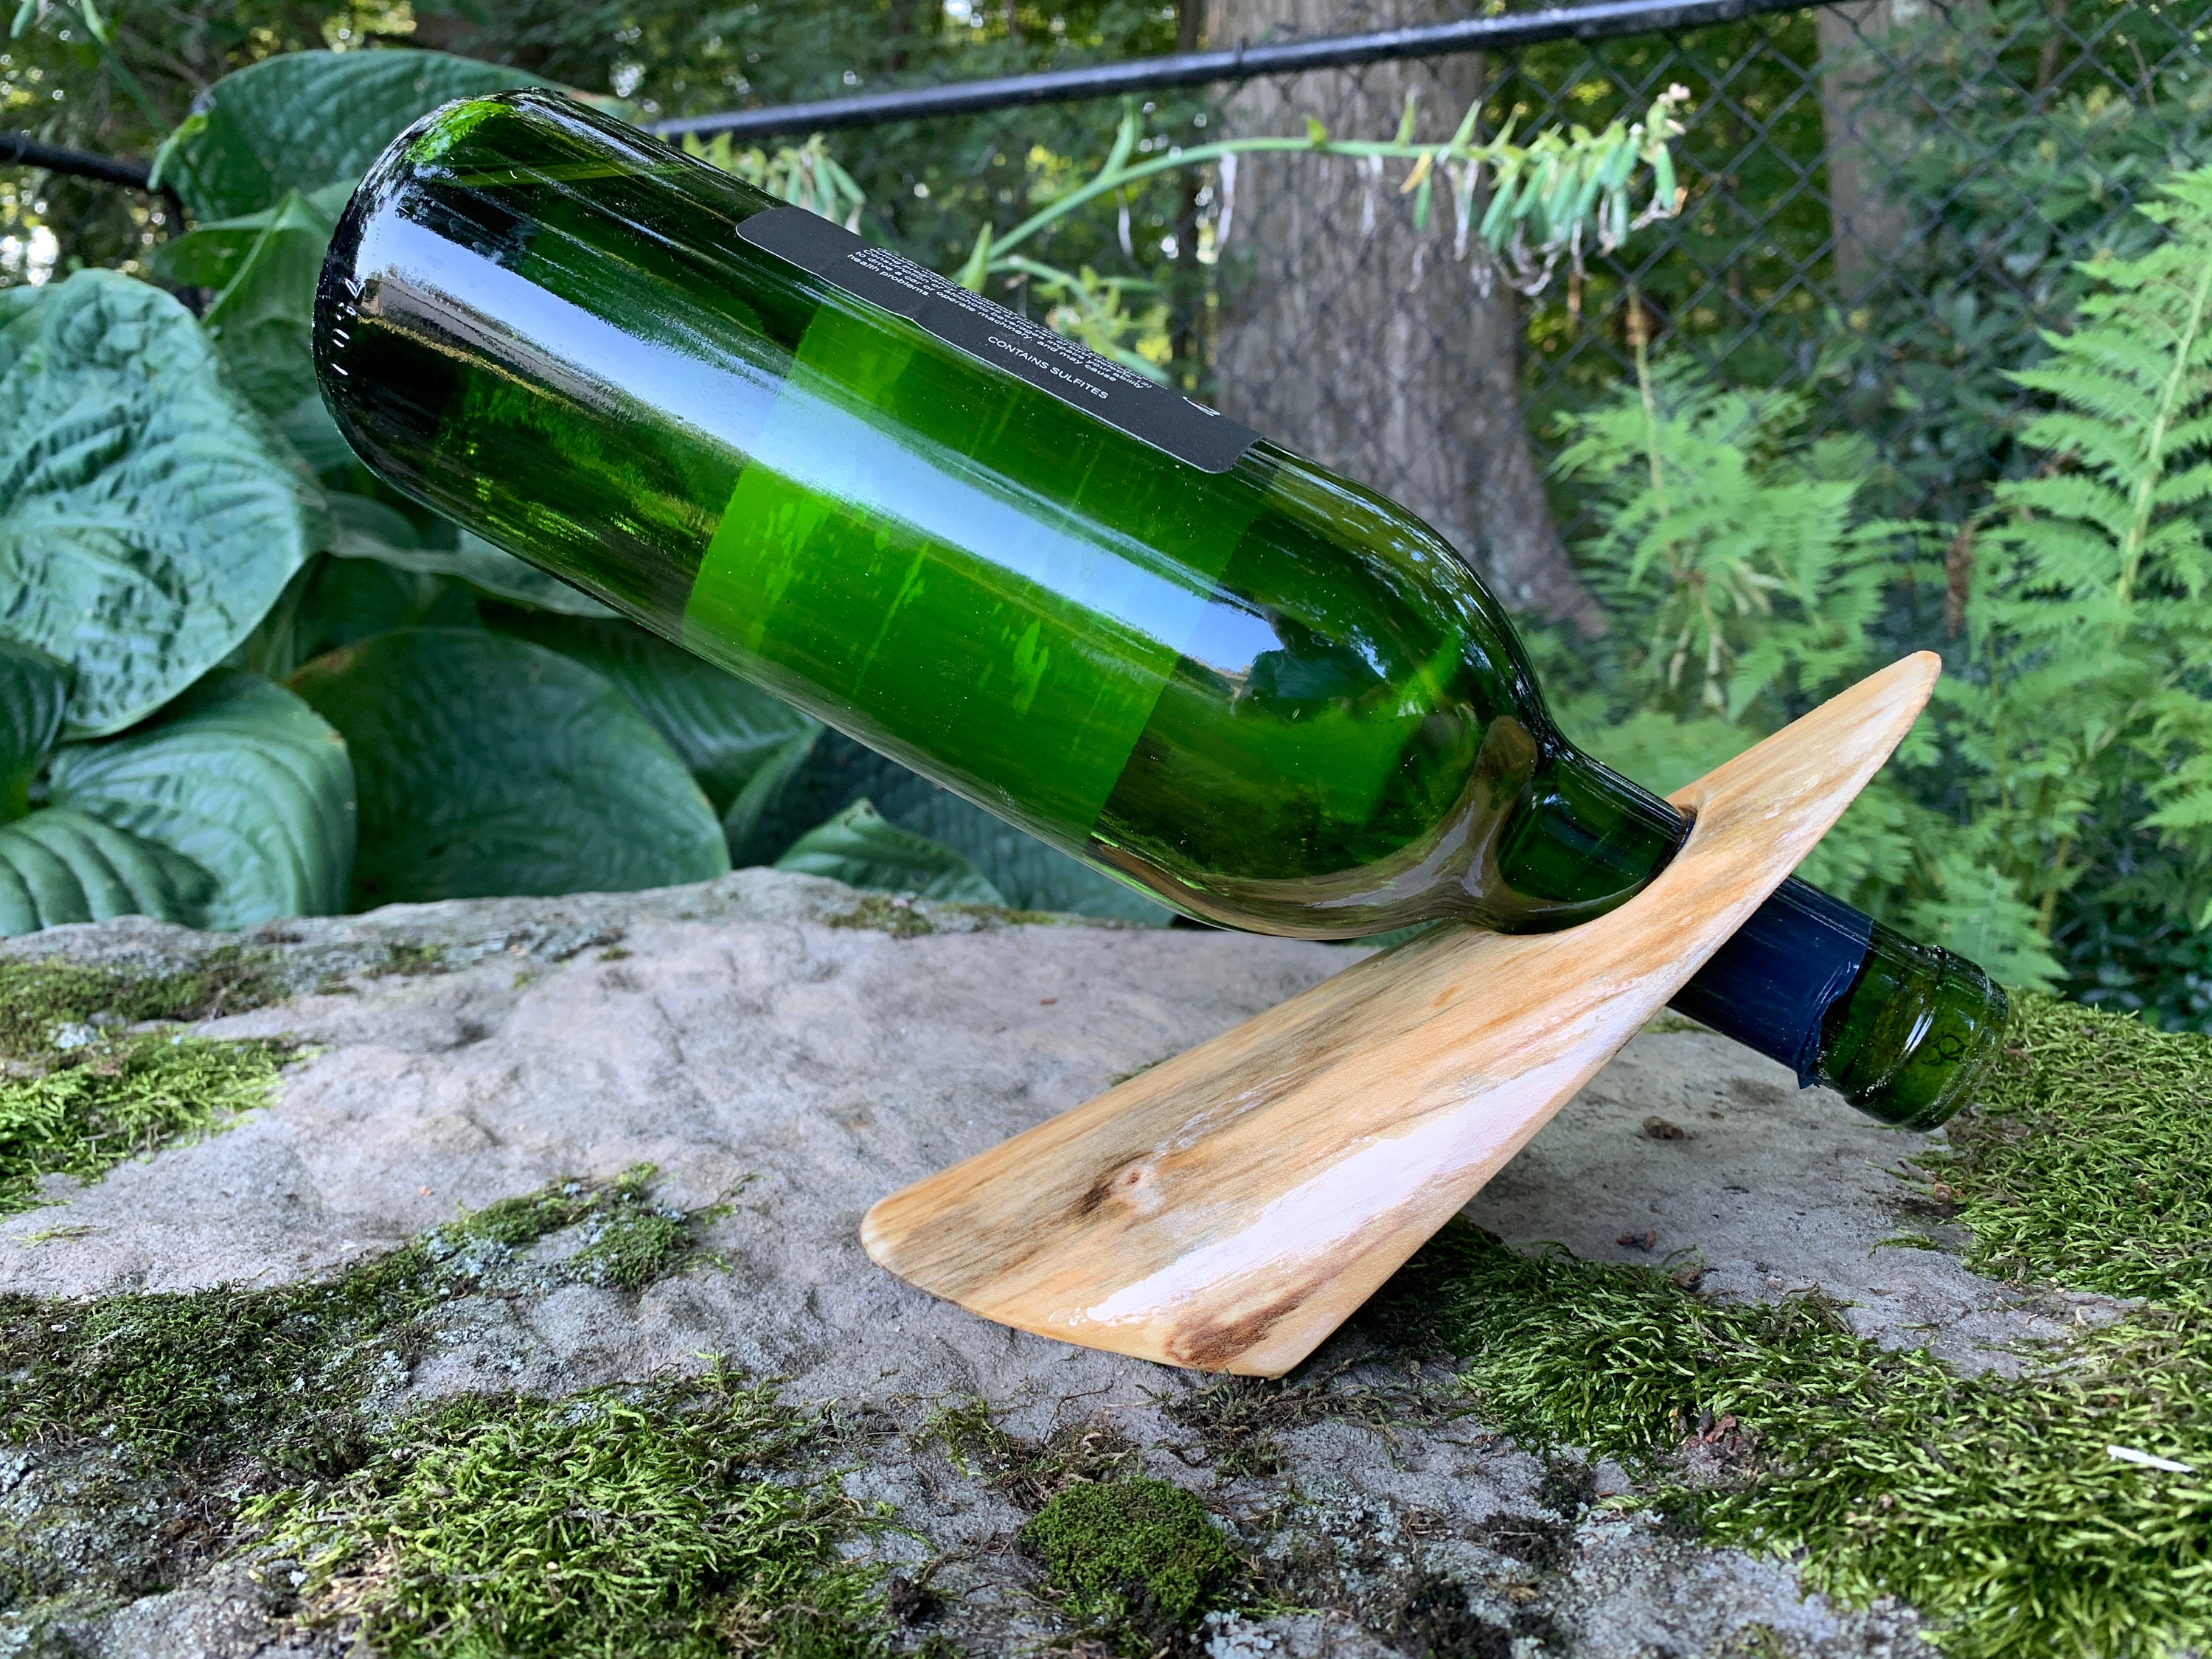 porte-bouteille de vin unique, fabriqué à partir d'une bûche solide et naturelle. l'écorce a été soigneusement enlevée pour montrer le grain